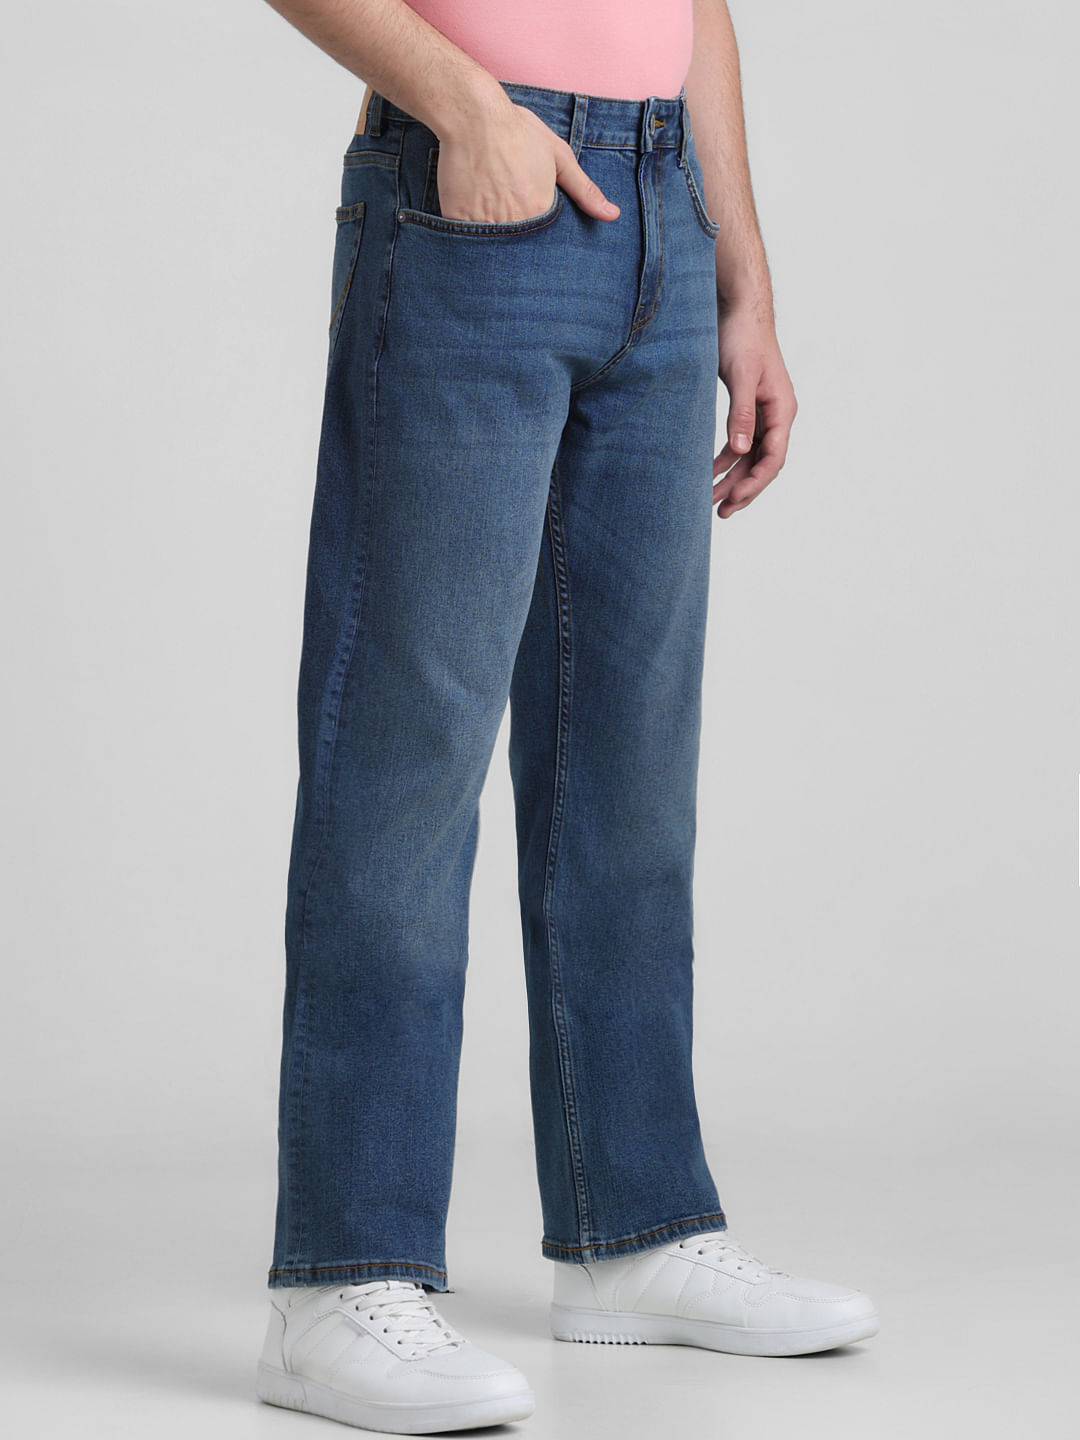 SMOG Slim Fit Straight Leg Jeans Men's 33/32 Black Rinse Wash Denim  5-Pocket | eBay